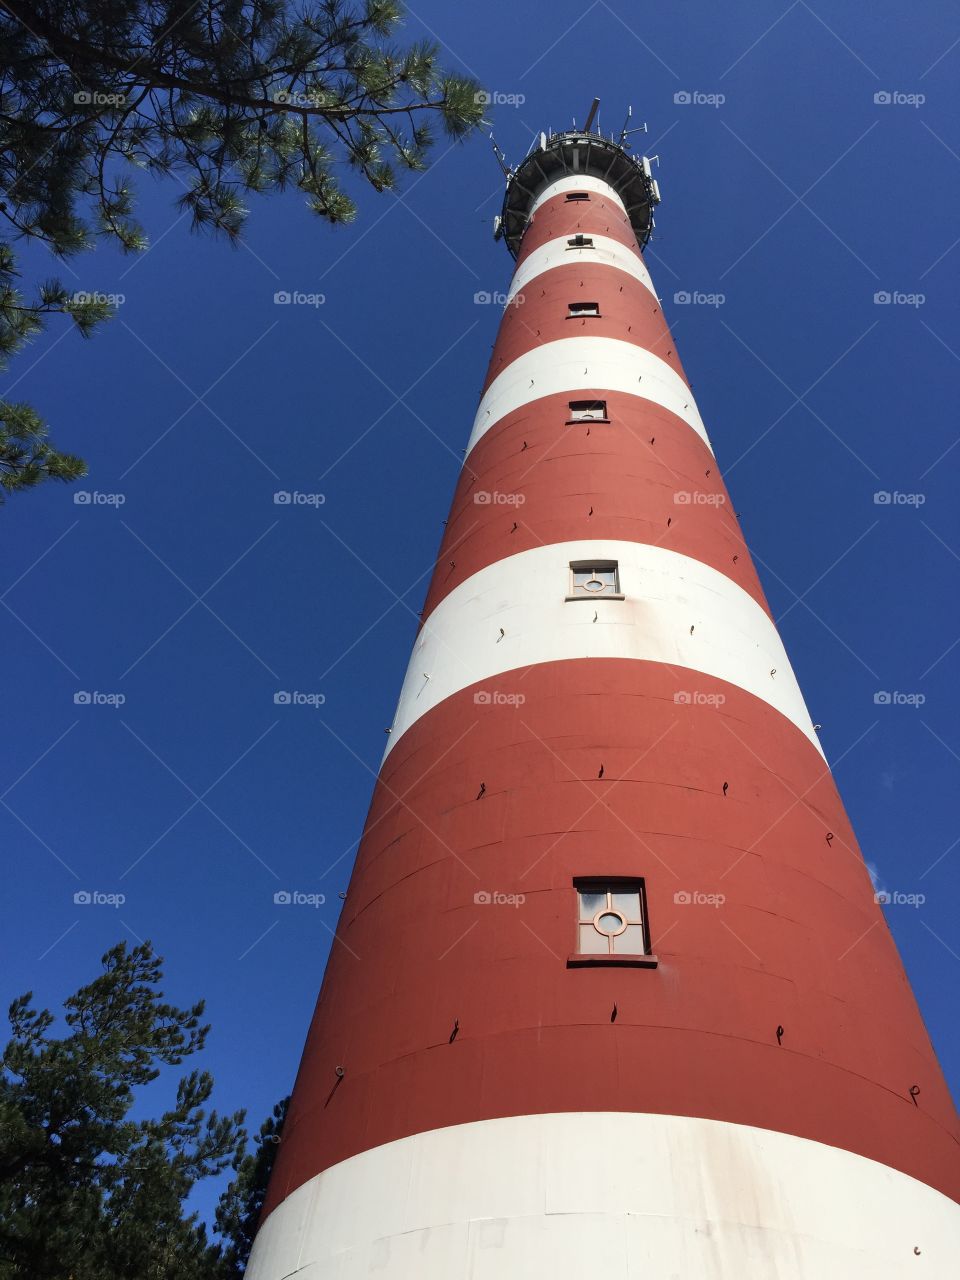 Leuchtturm Holland Niederlande klarer Tag Farben rot weiß blau Höhe Urlaub Ferien See Meer Ozean Abenteuer 